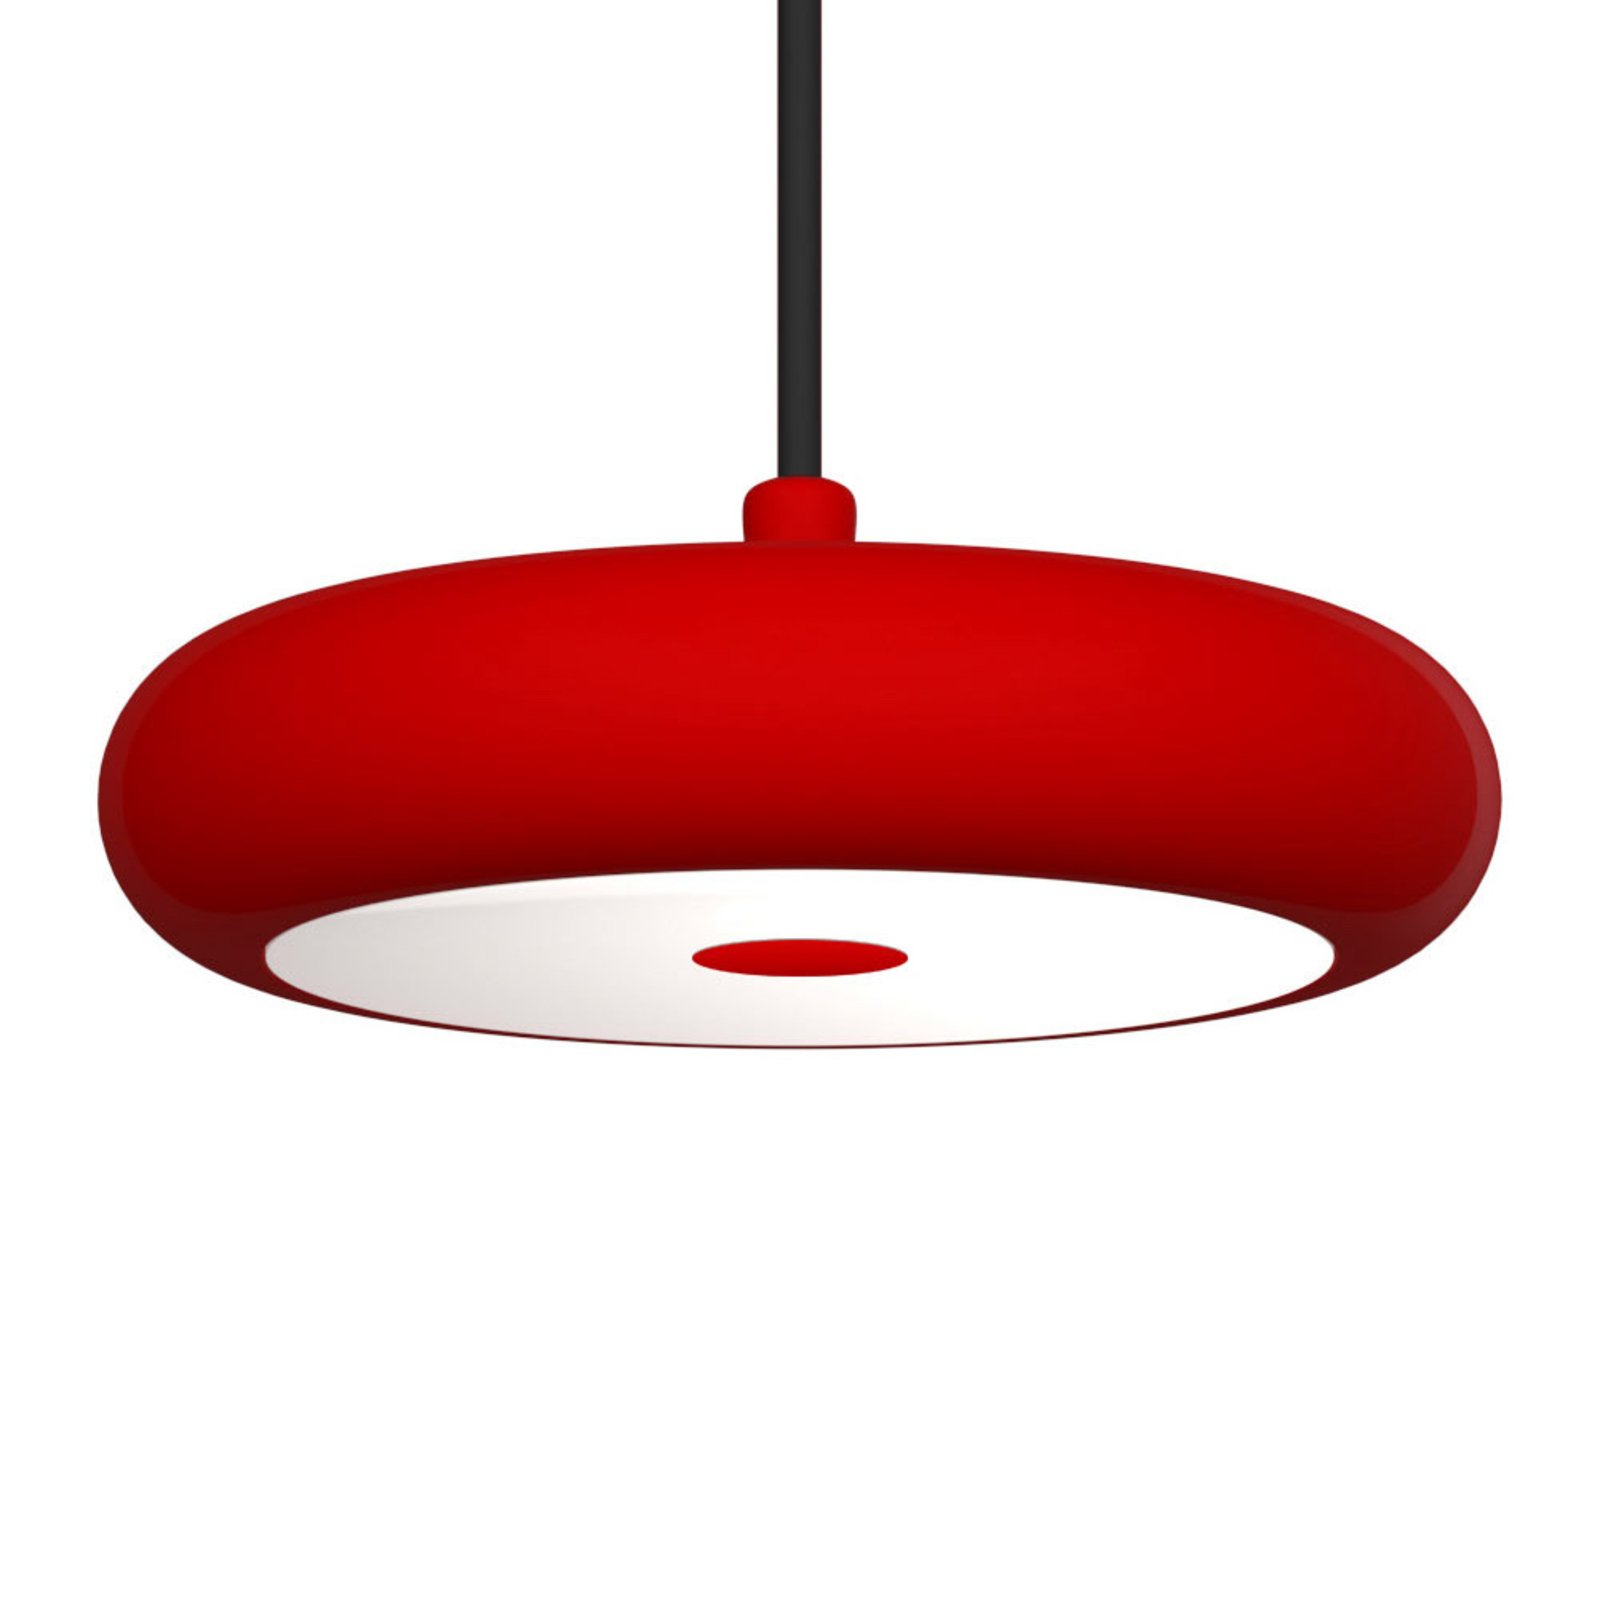 LED висящо осветление Boina, Ø 19 cm, червено